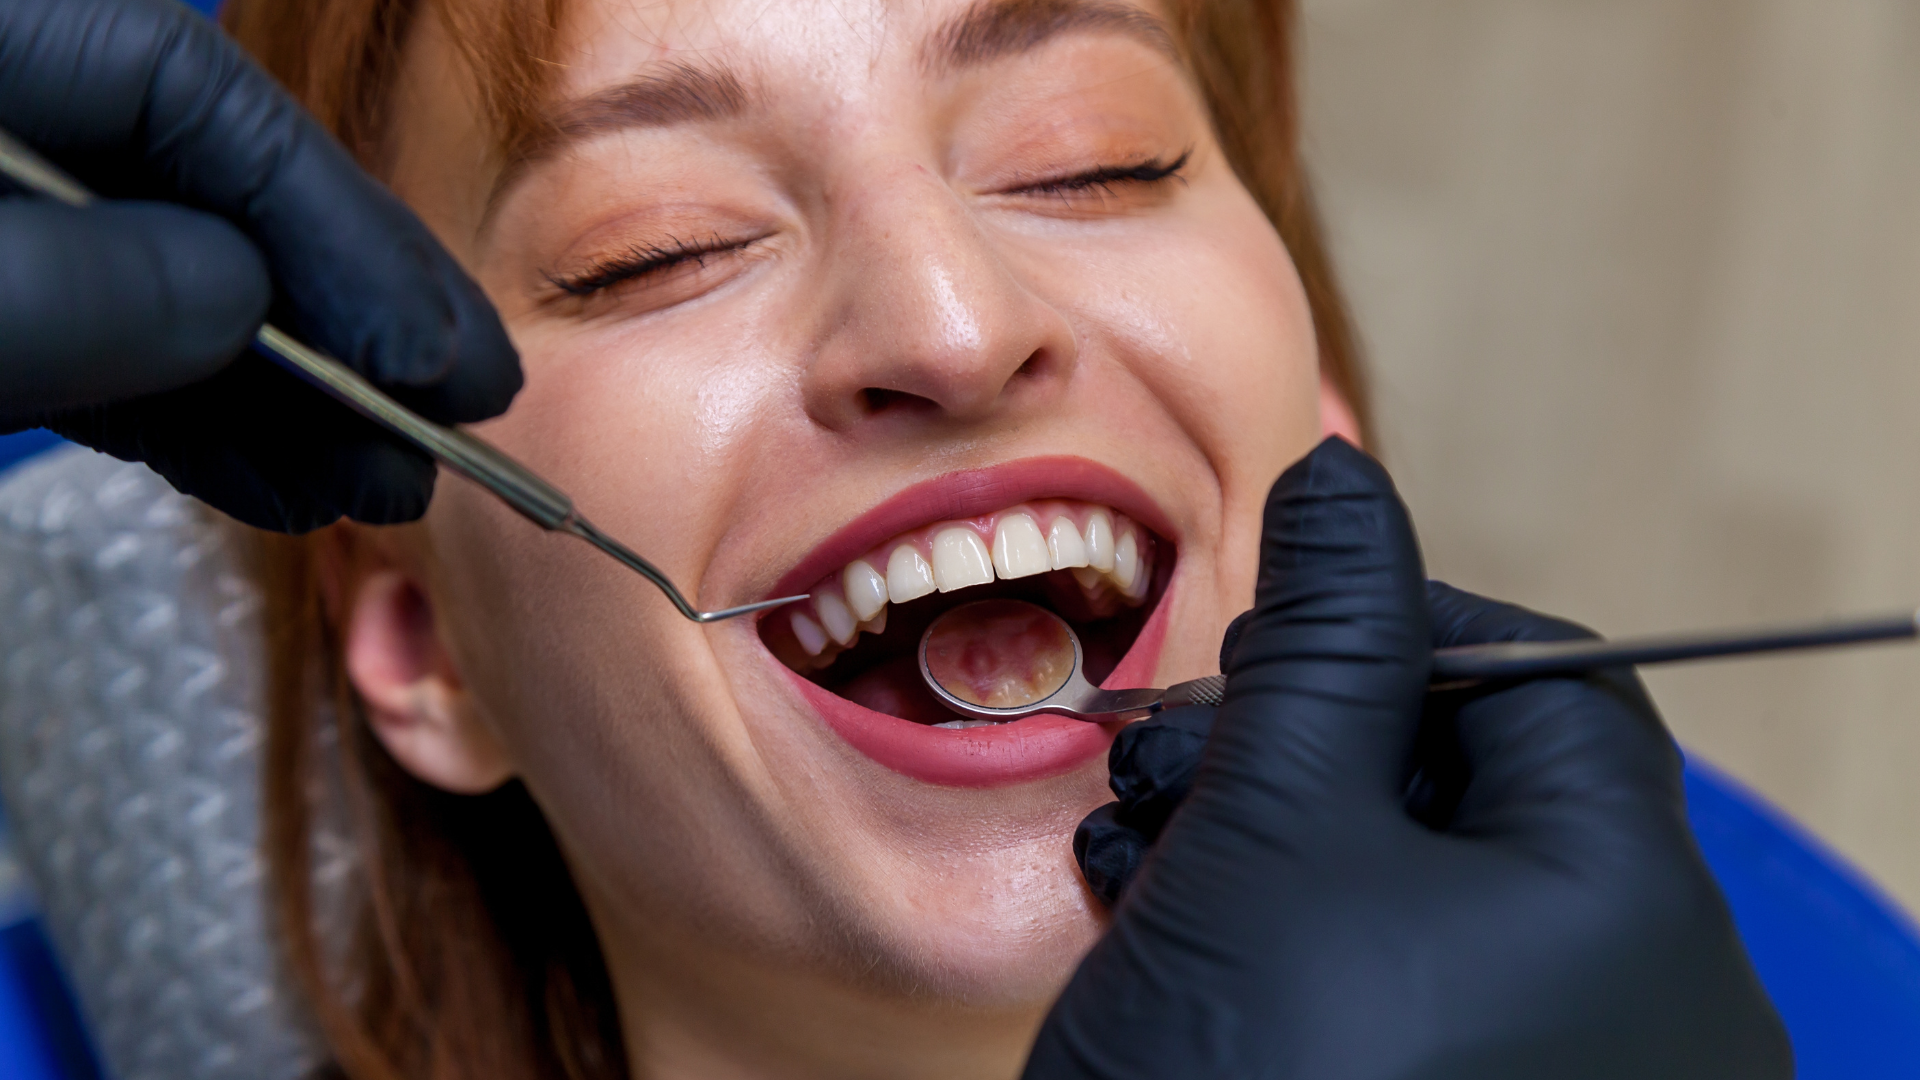 How long does dental bonding take?